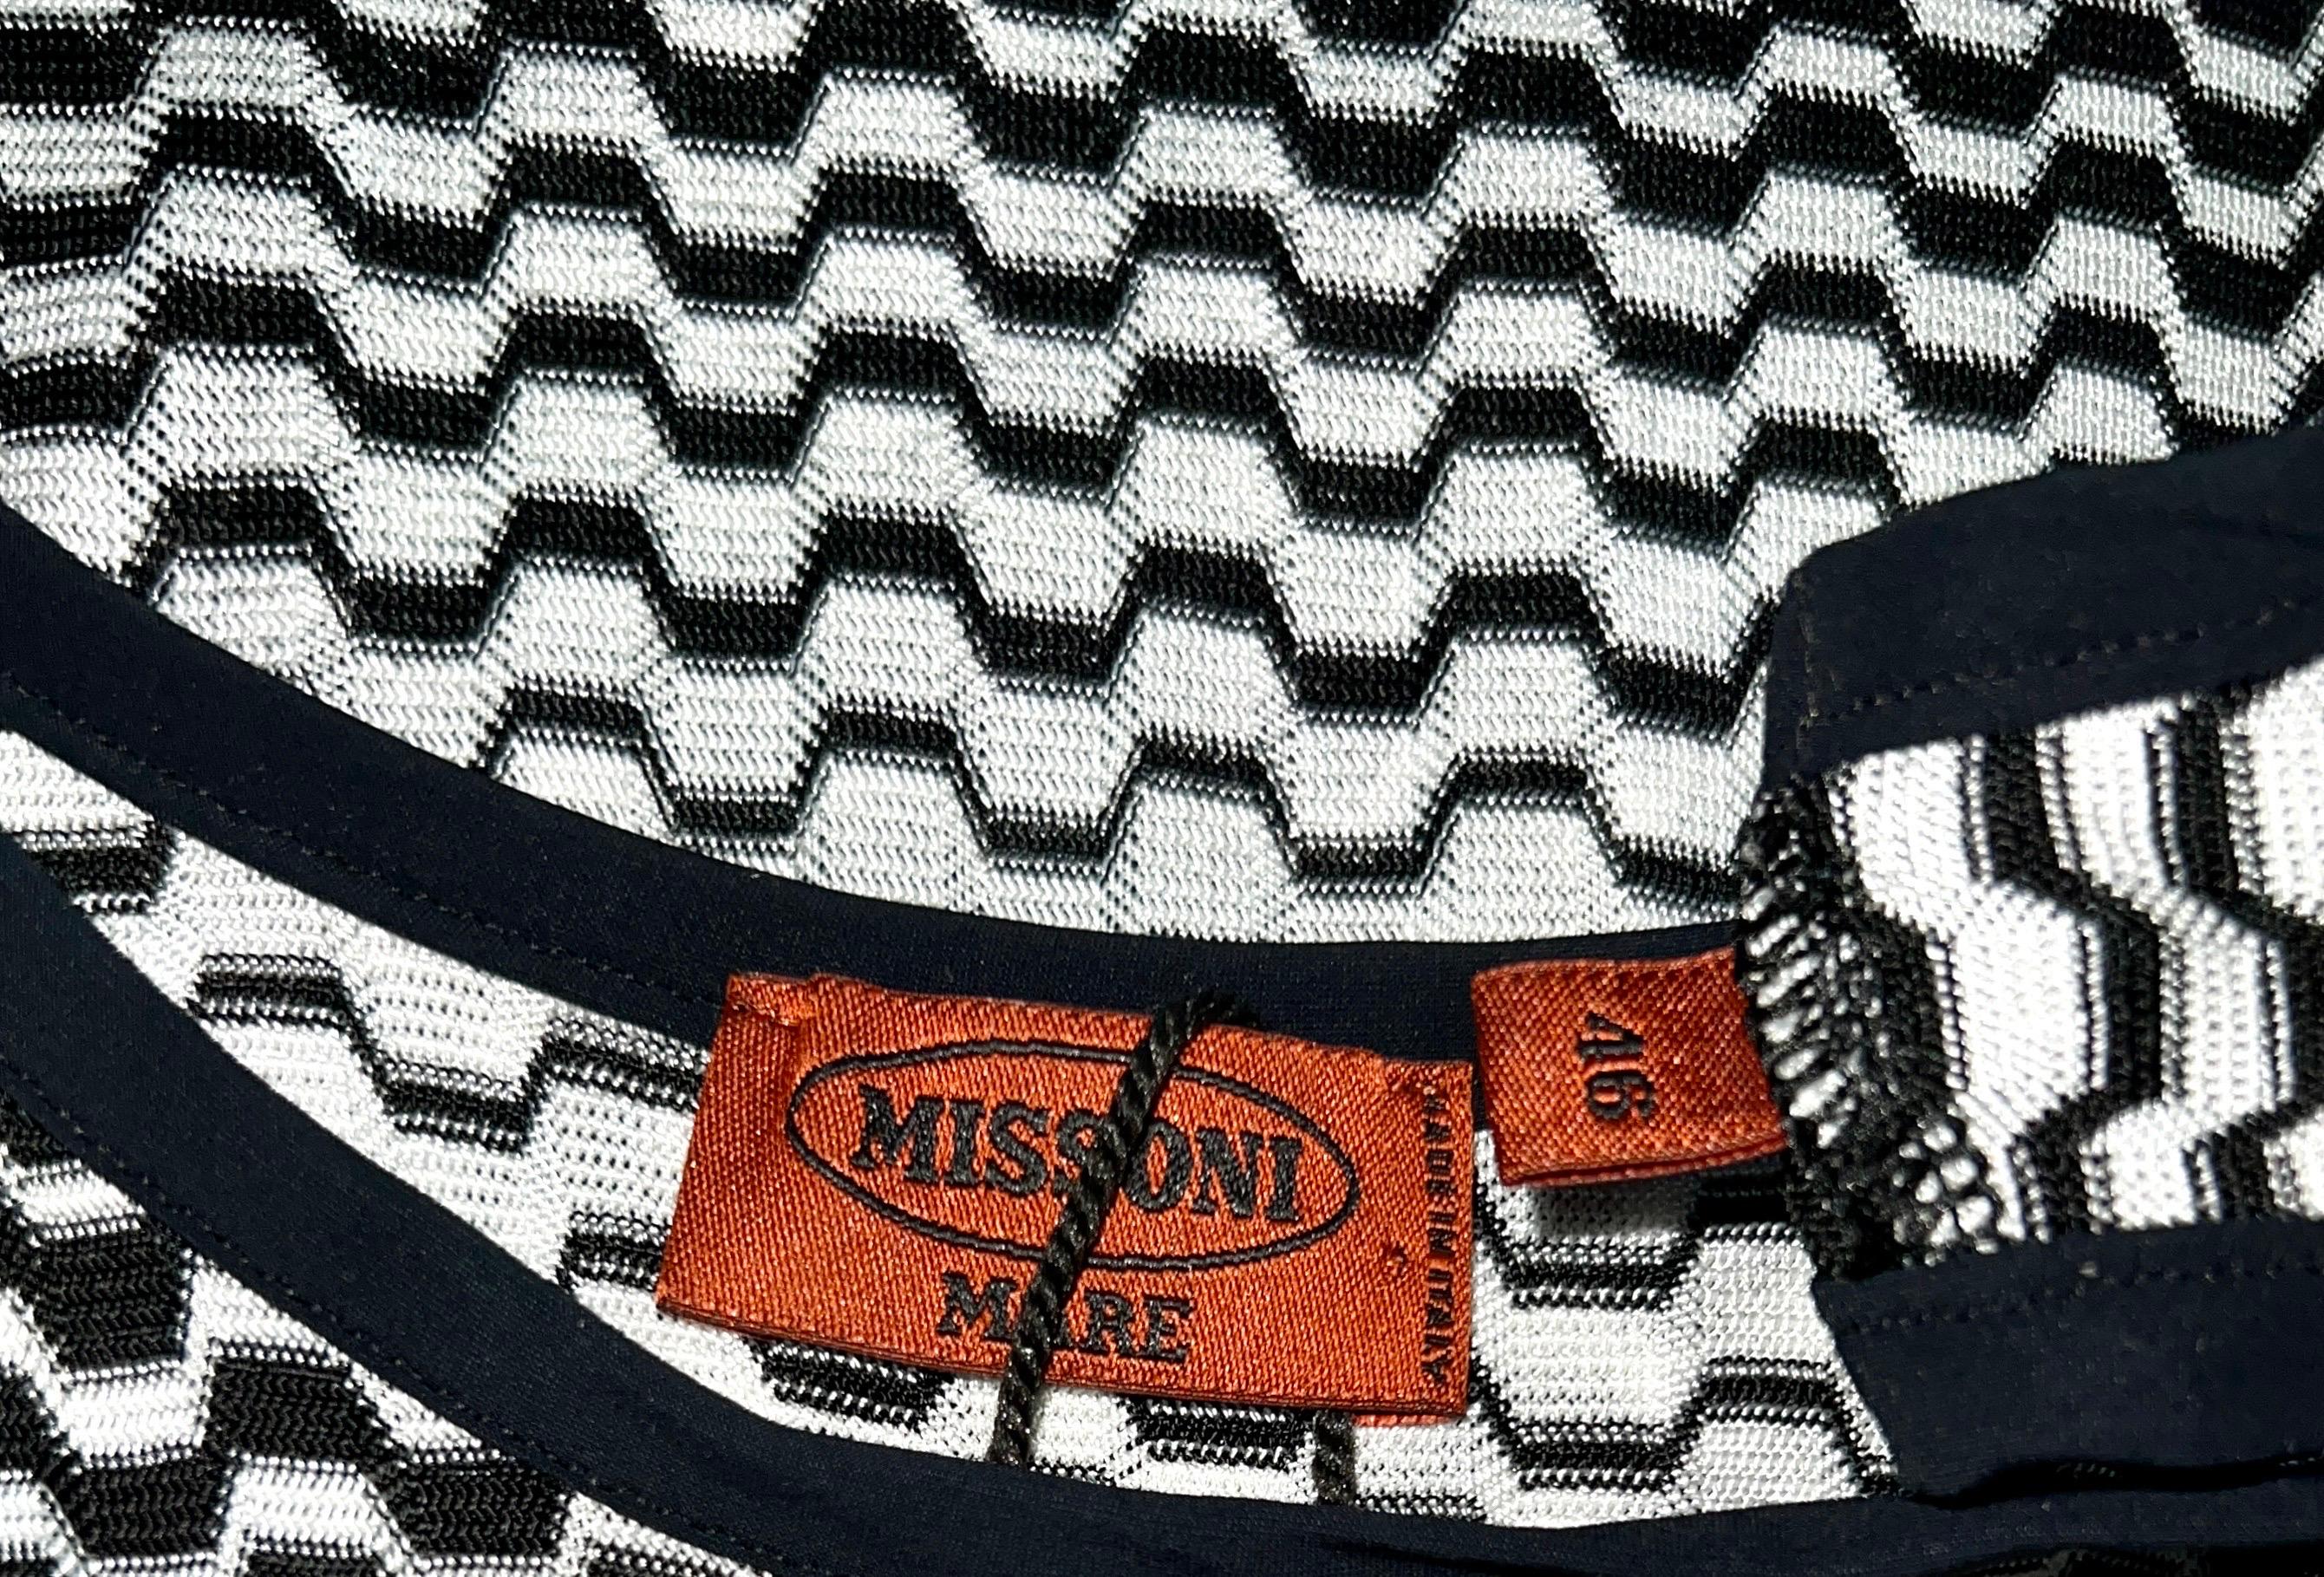 Missoni Monochrome Signature Chevron Zigzag Knit Dress 46 In Good Condition For Sale In Switzerland, CH